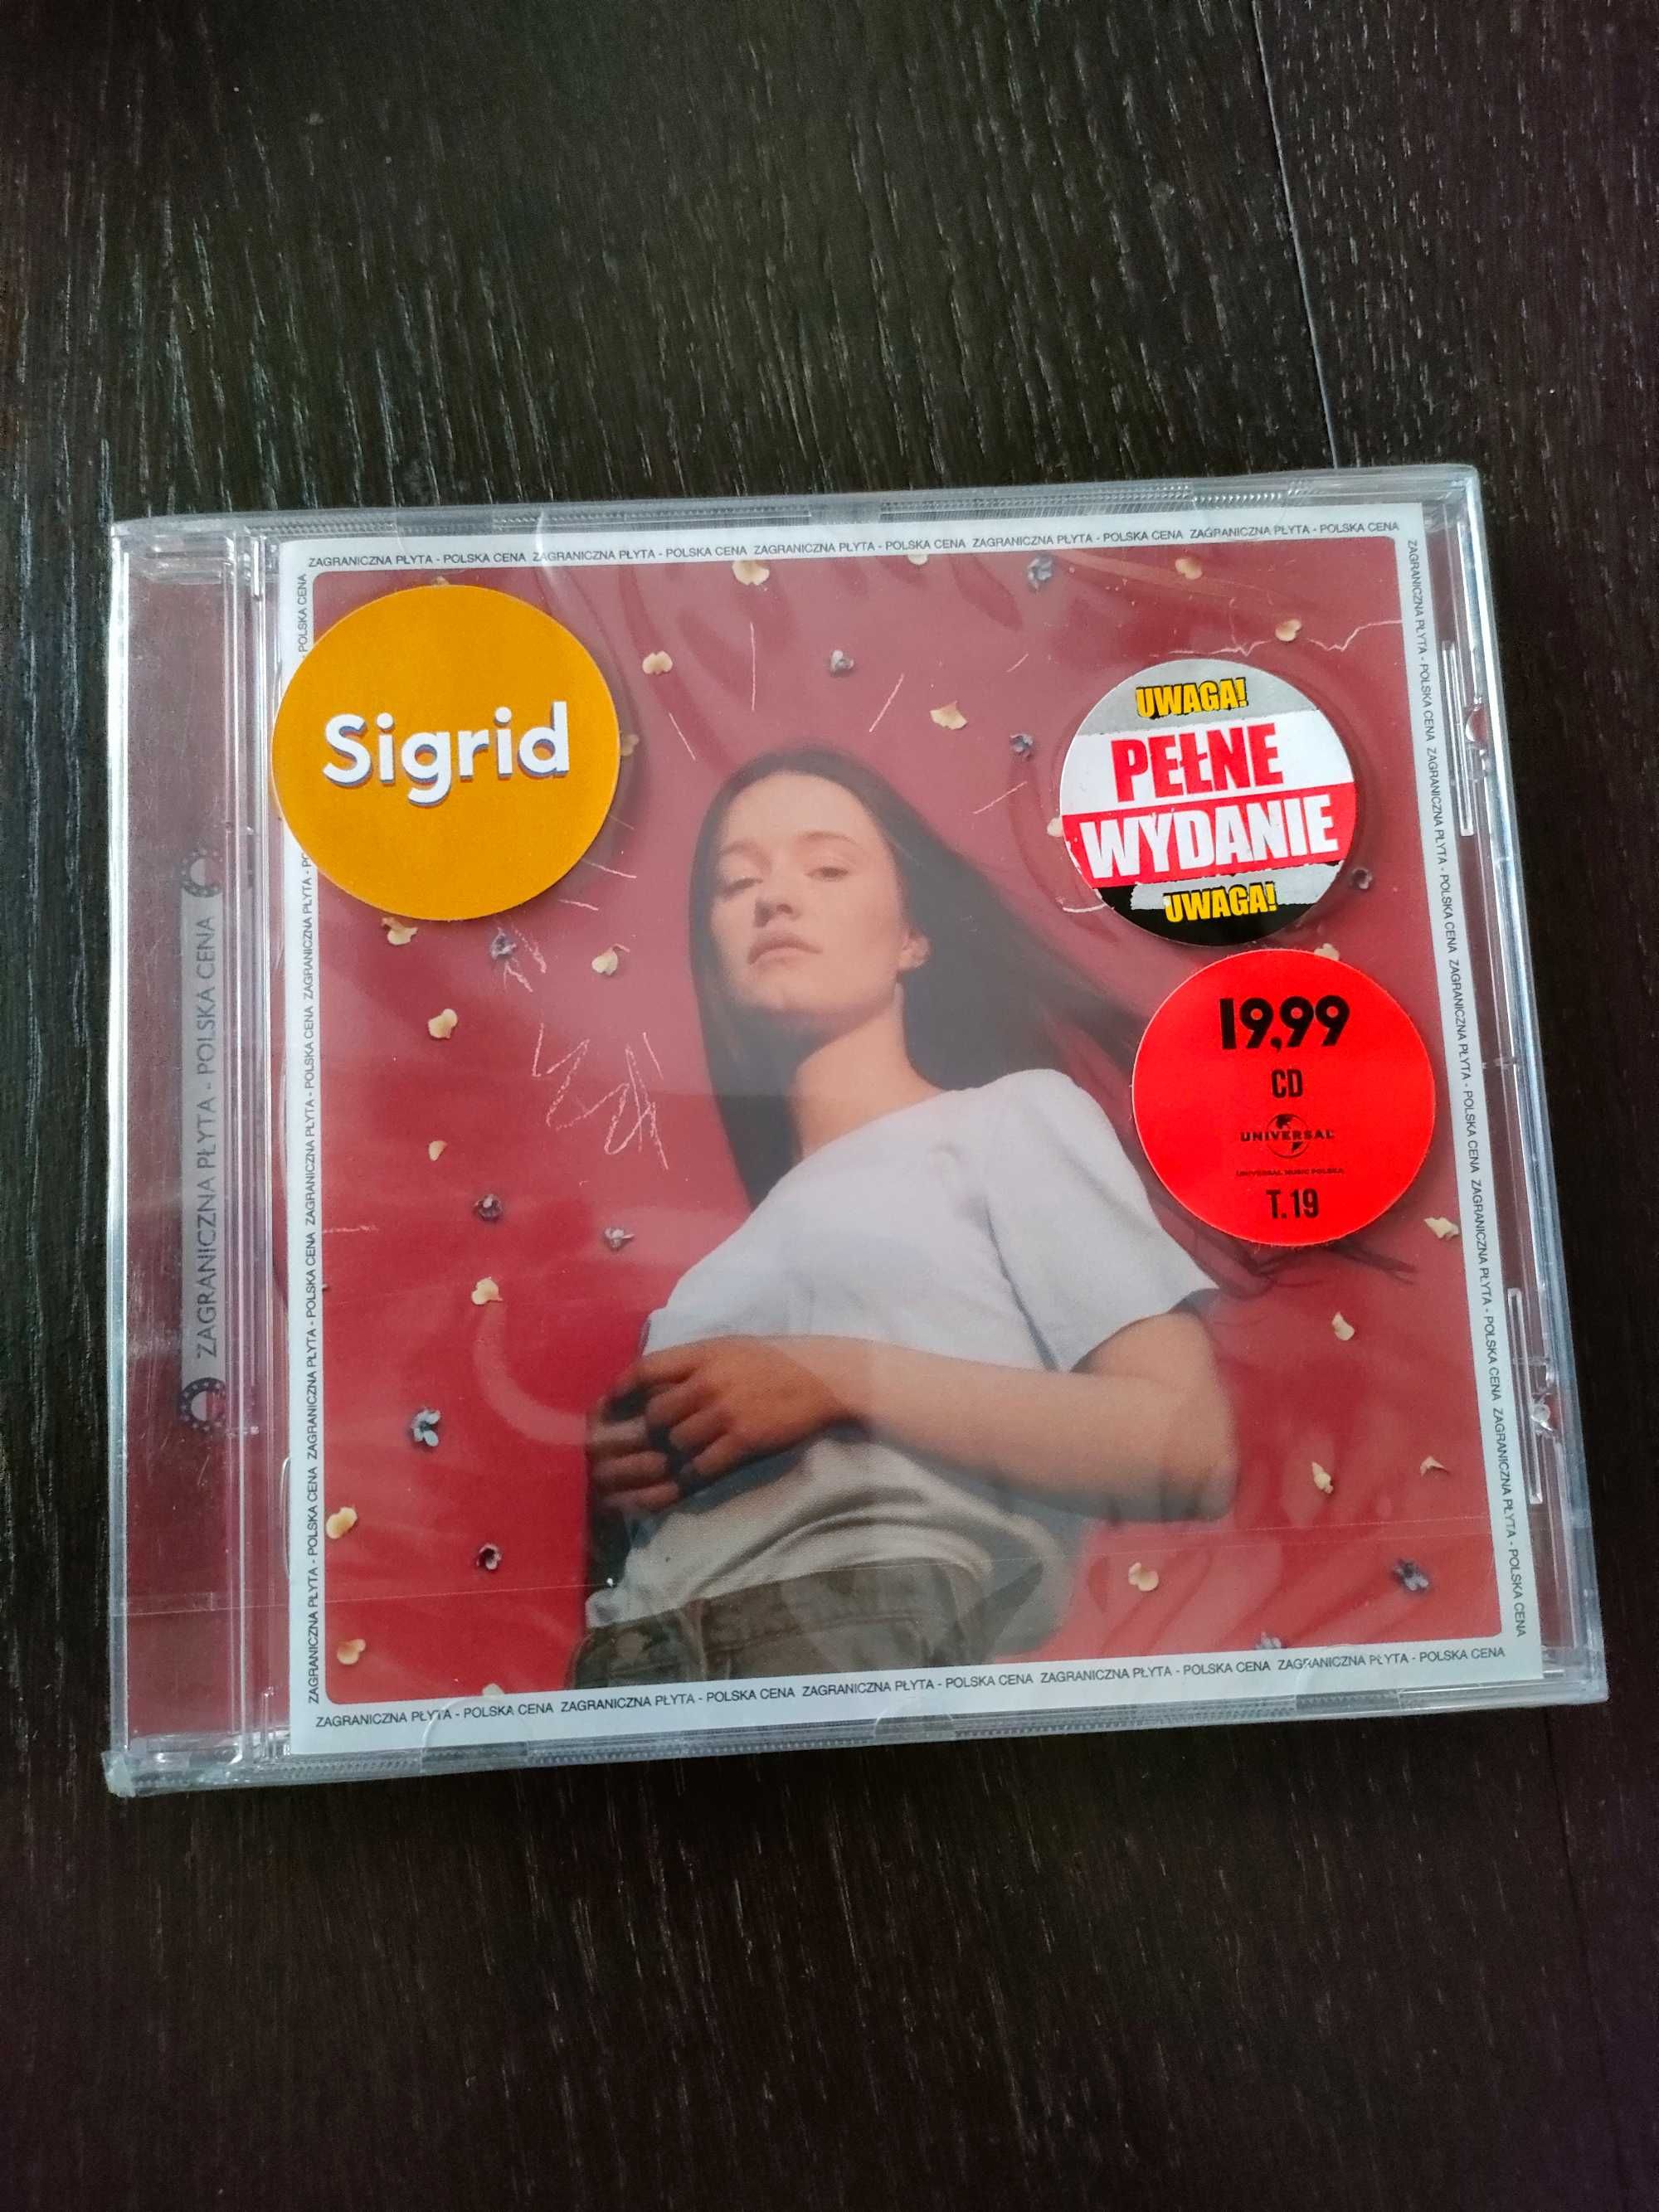 Sigrid sucker punch cd